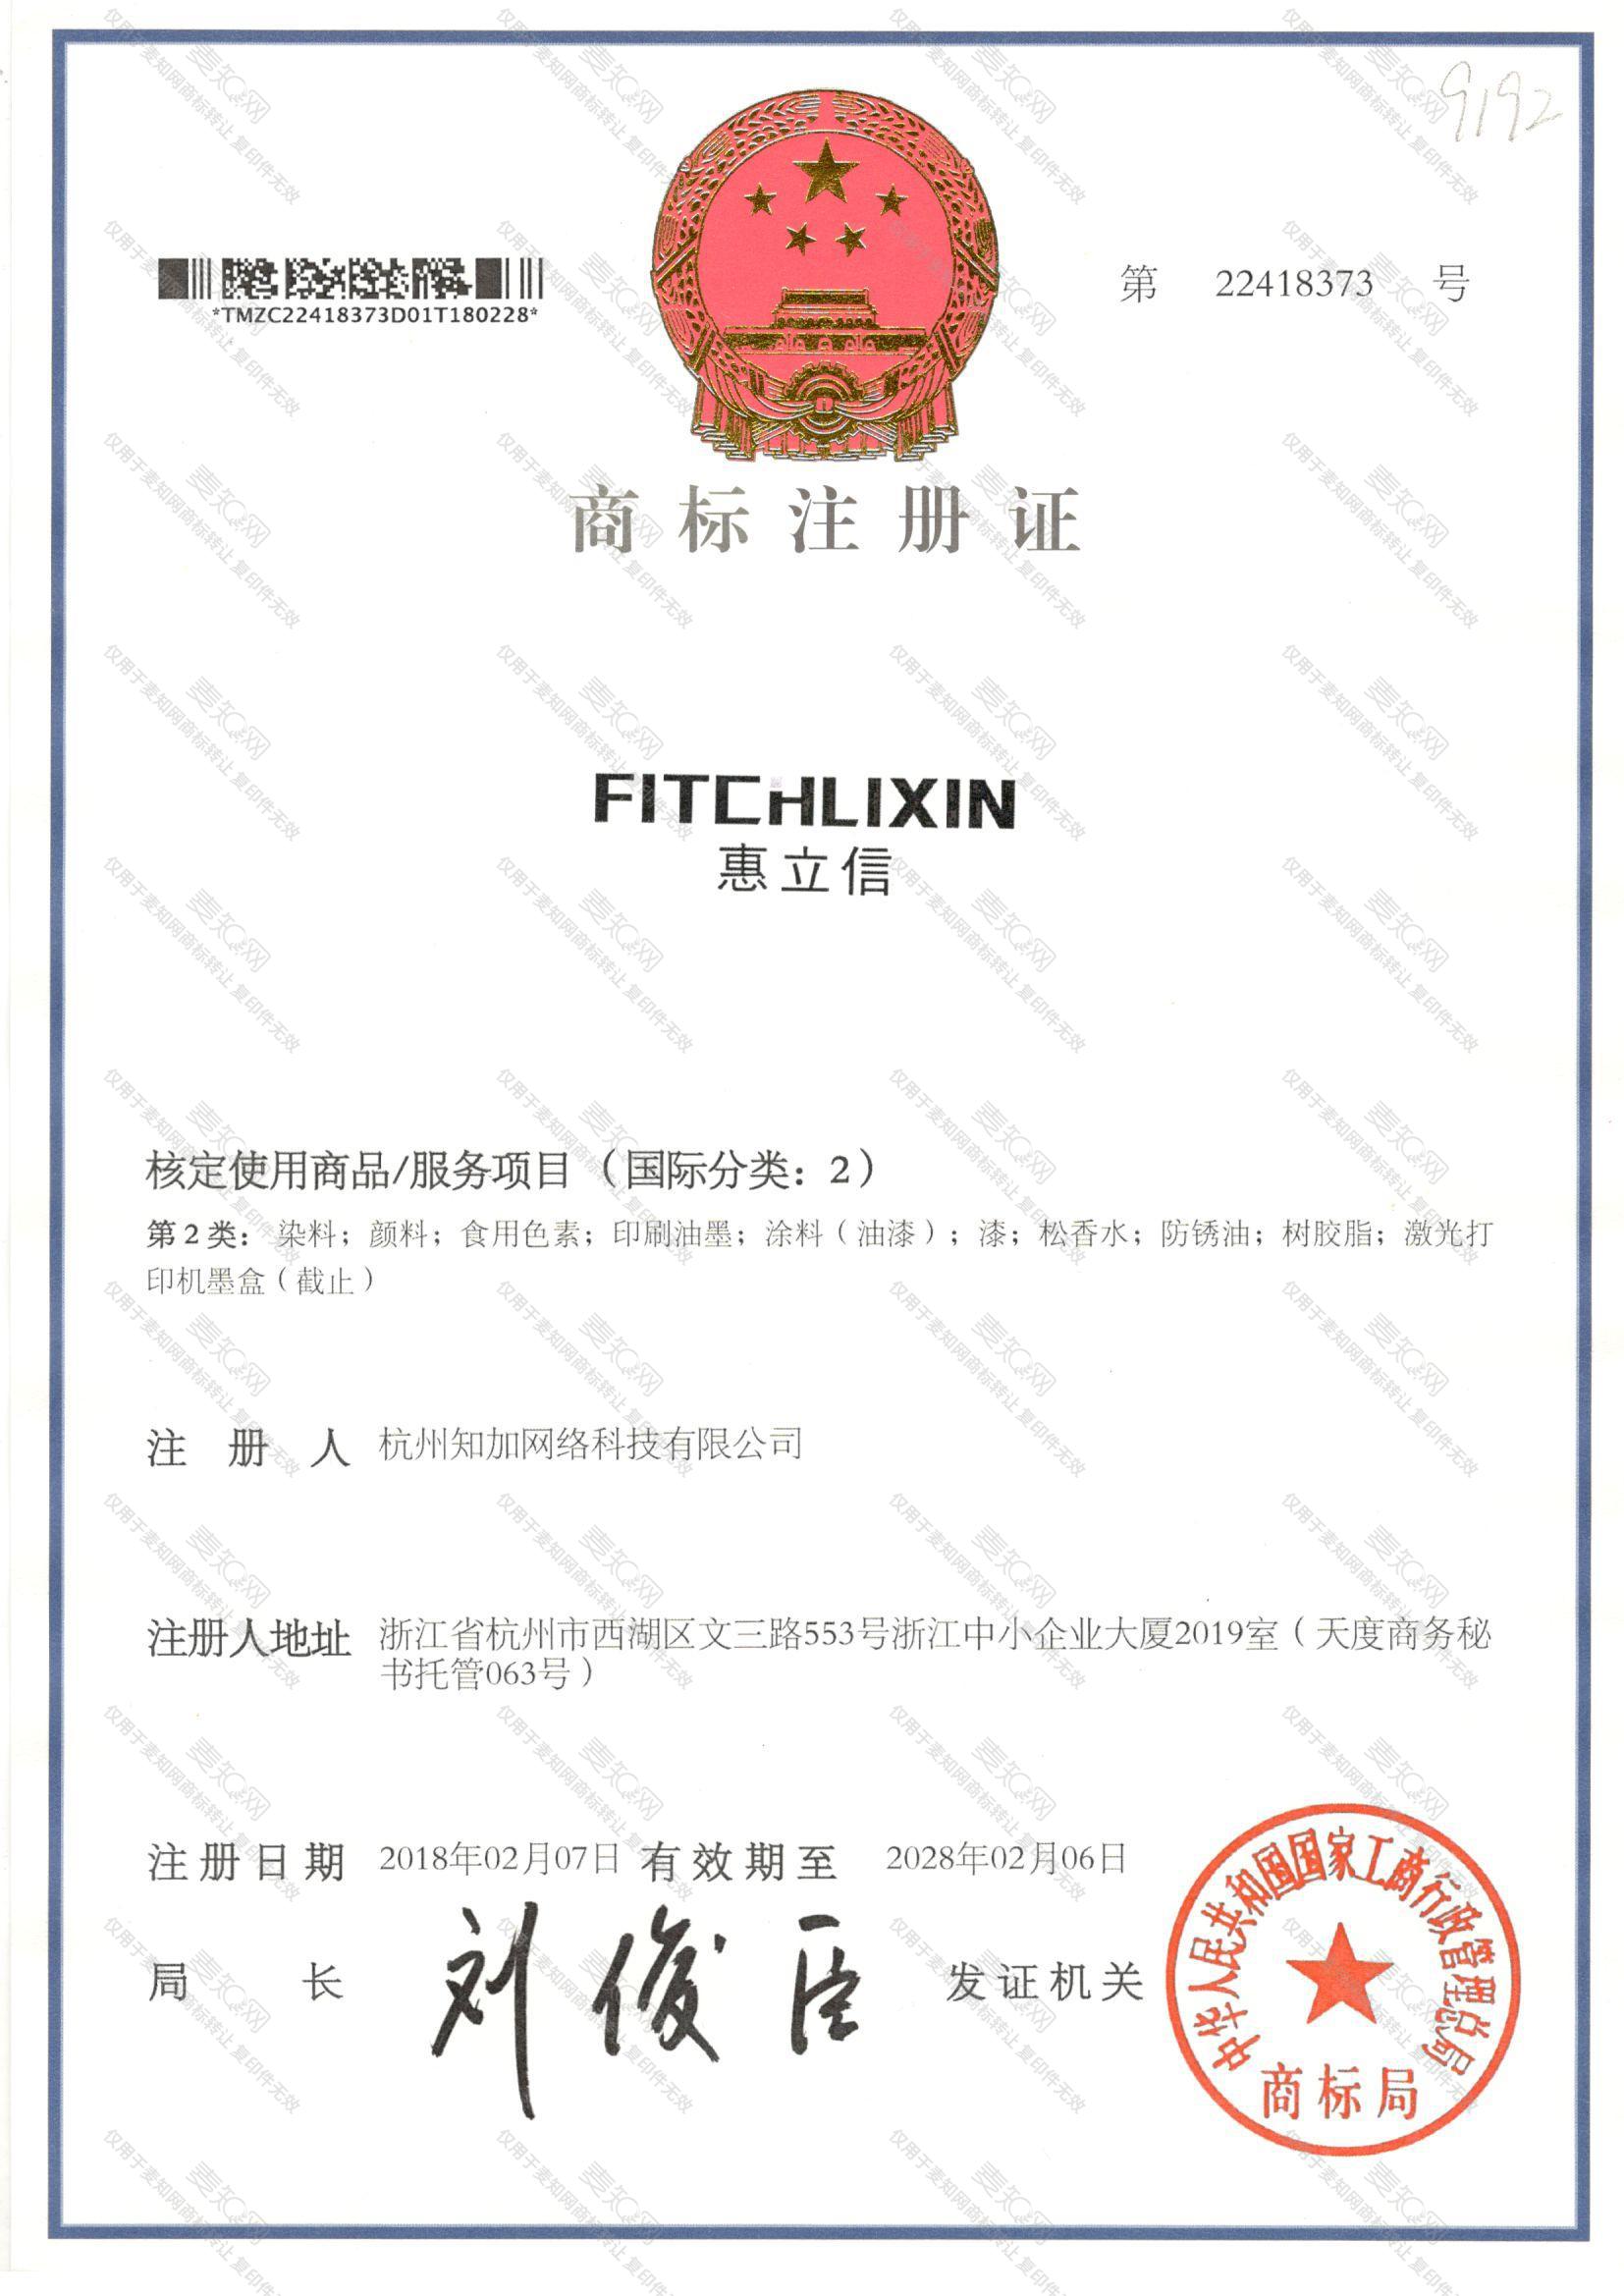 惠立信 FITCHLIXIN注册证